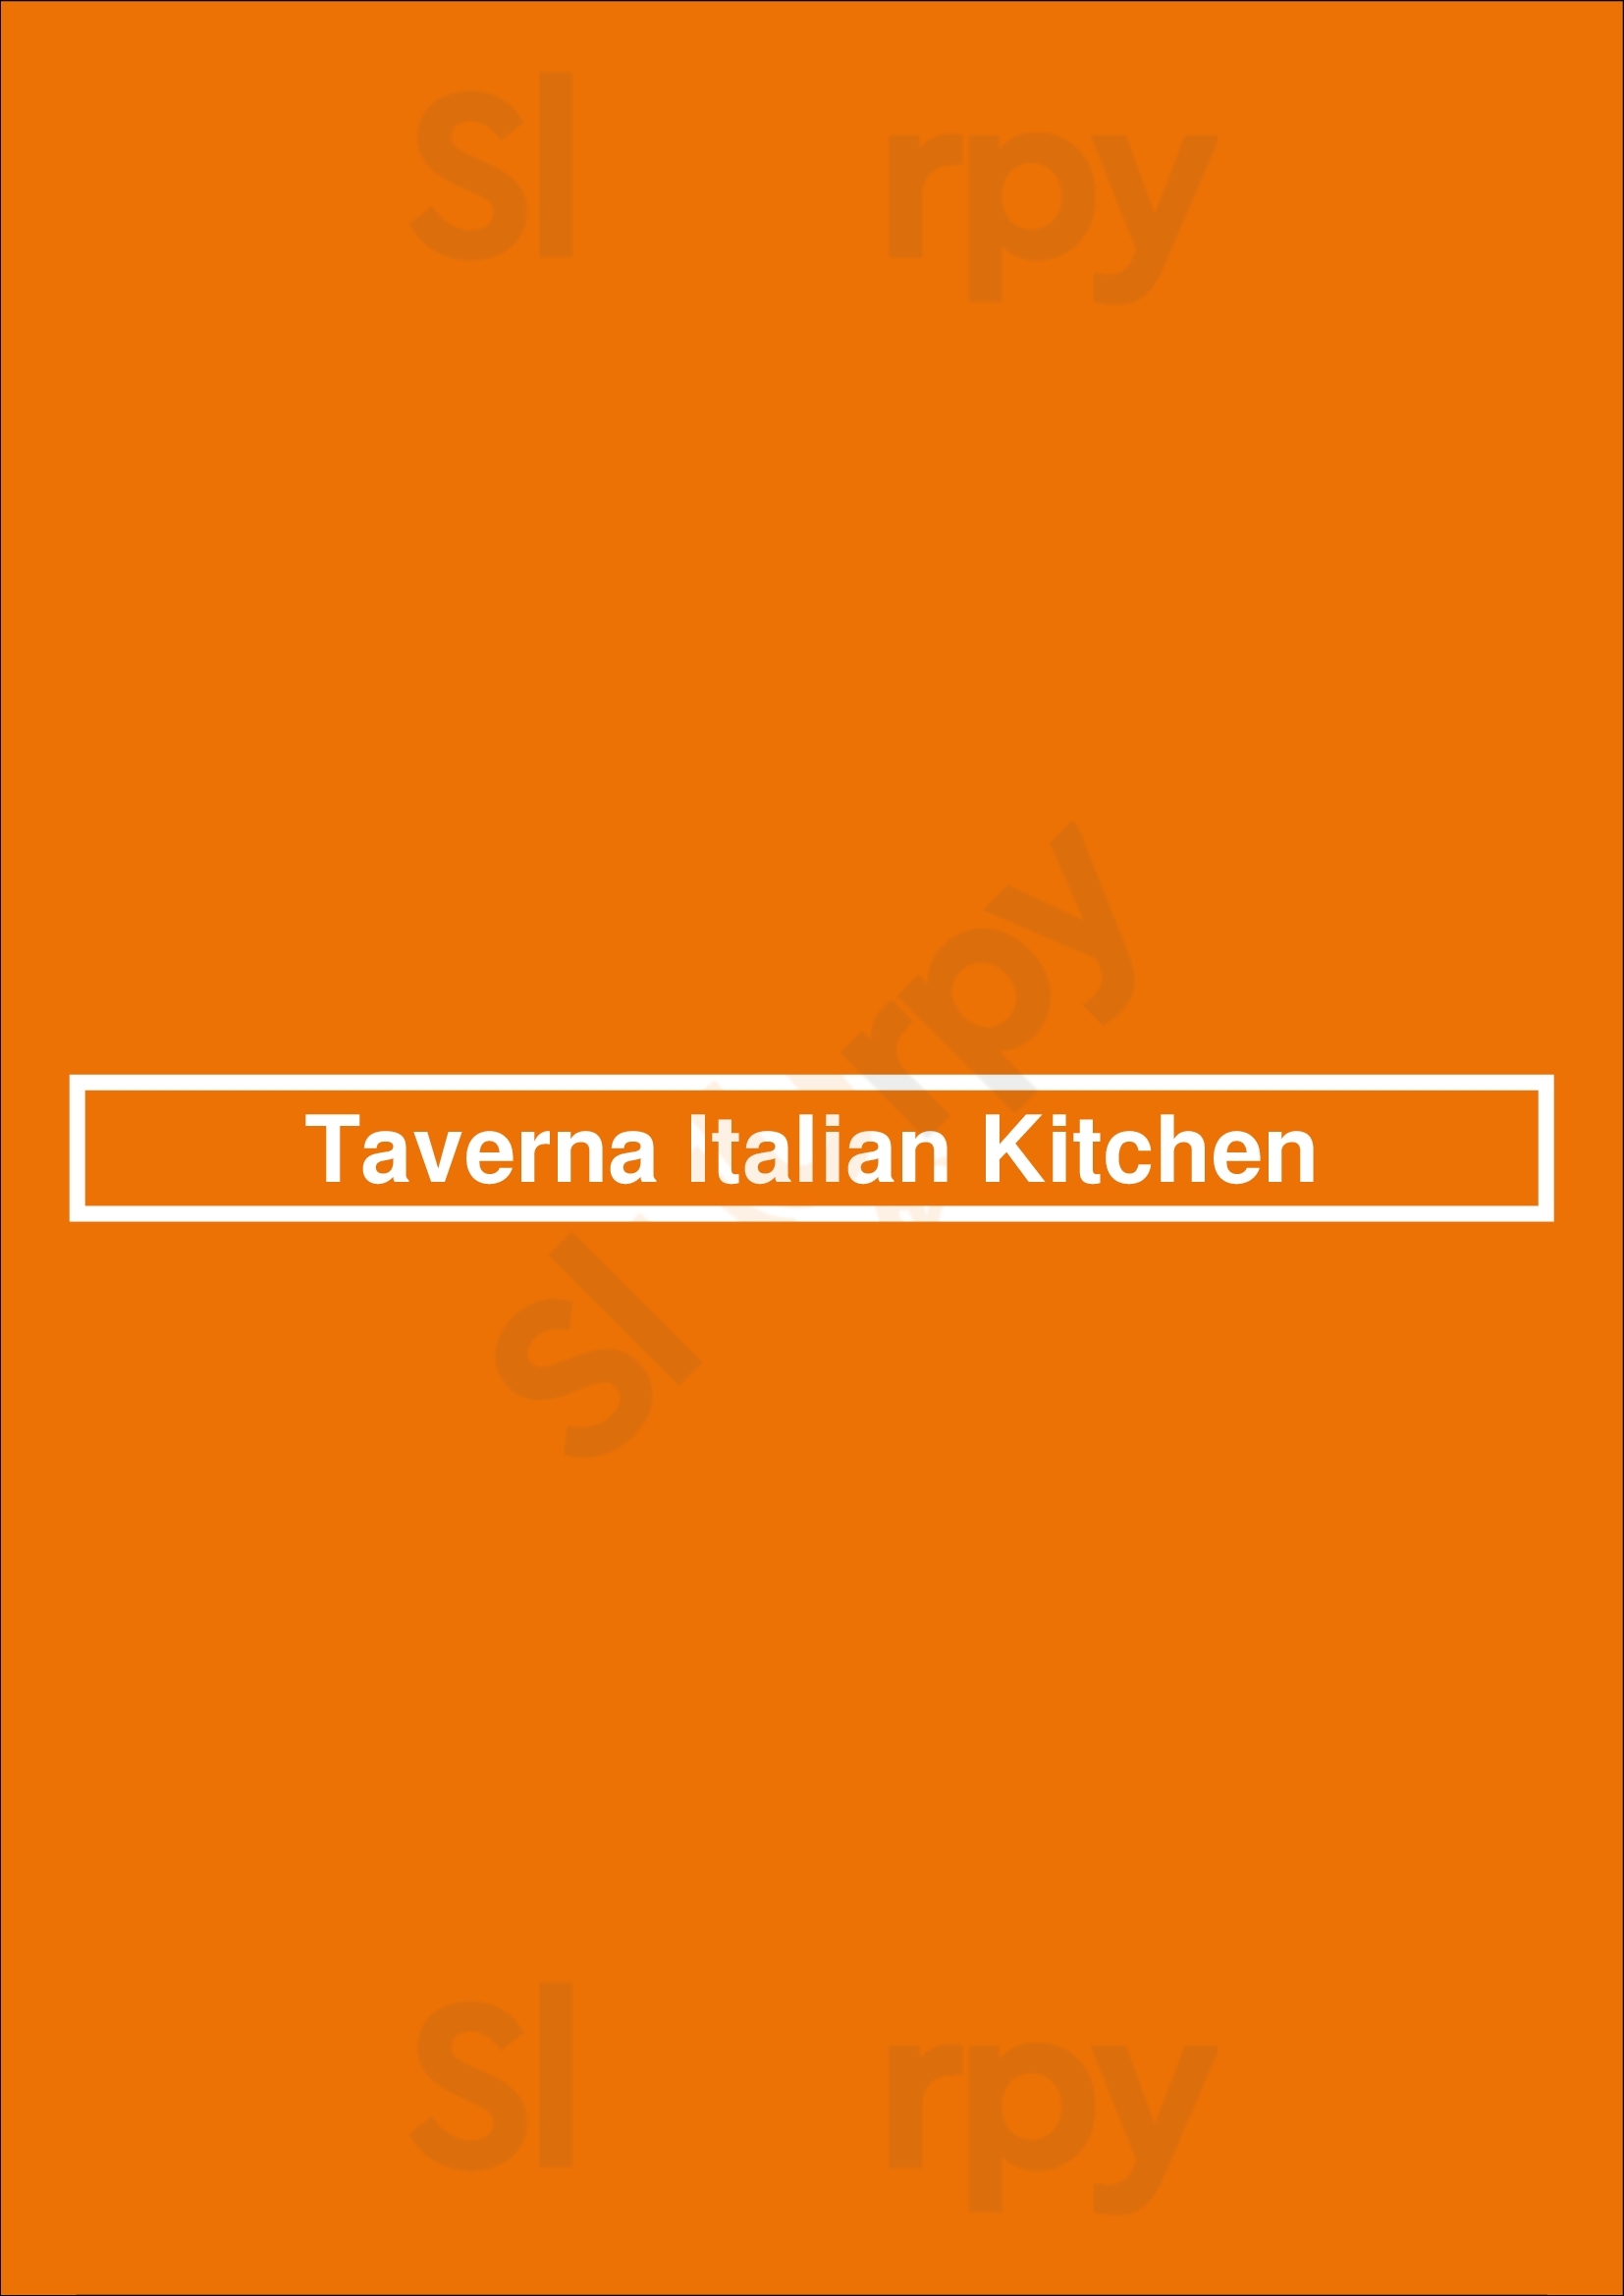 Taverna Italian Kitchen Saskatoon Menu - 1